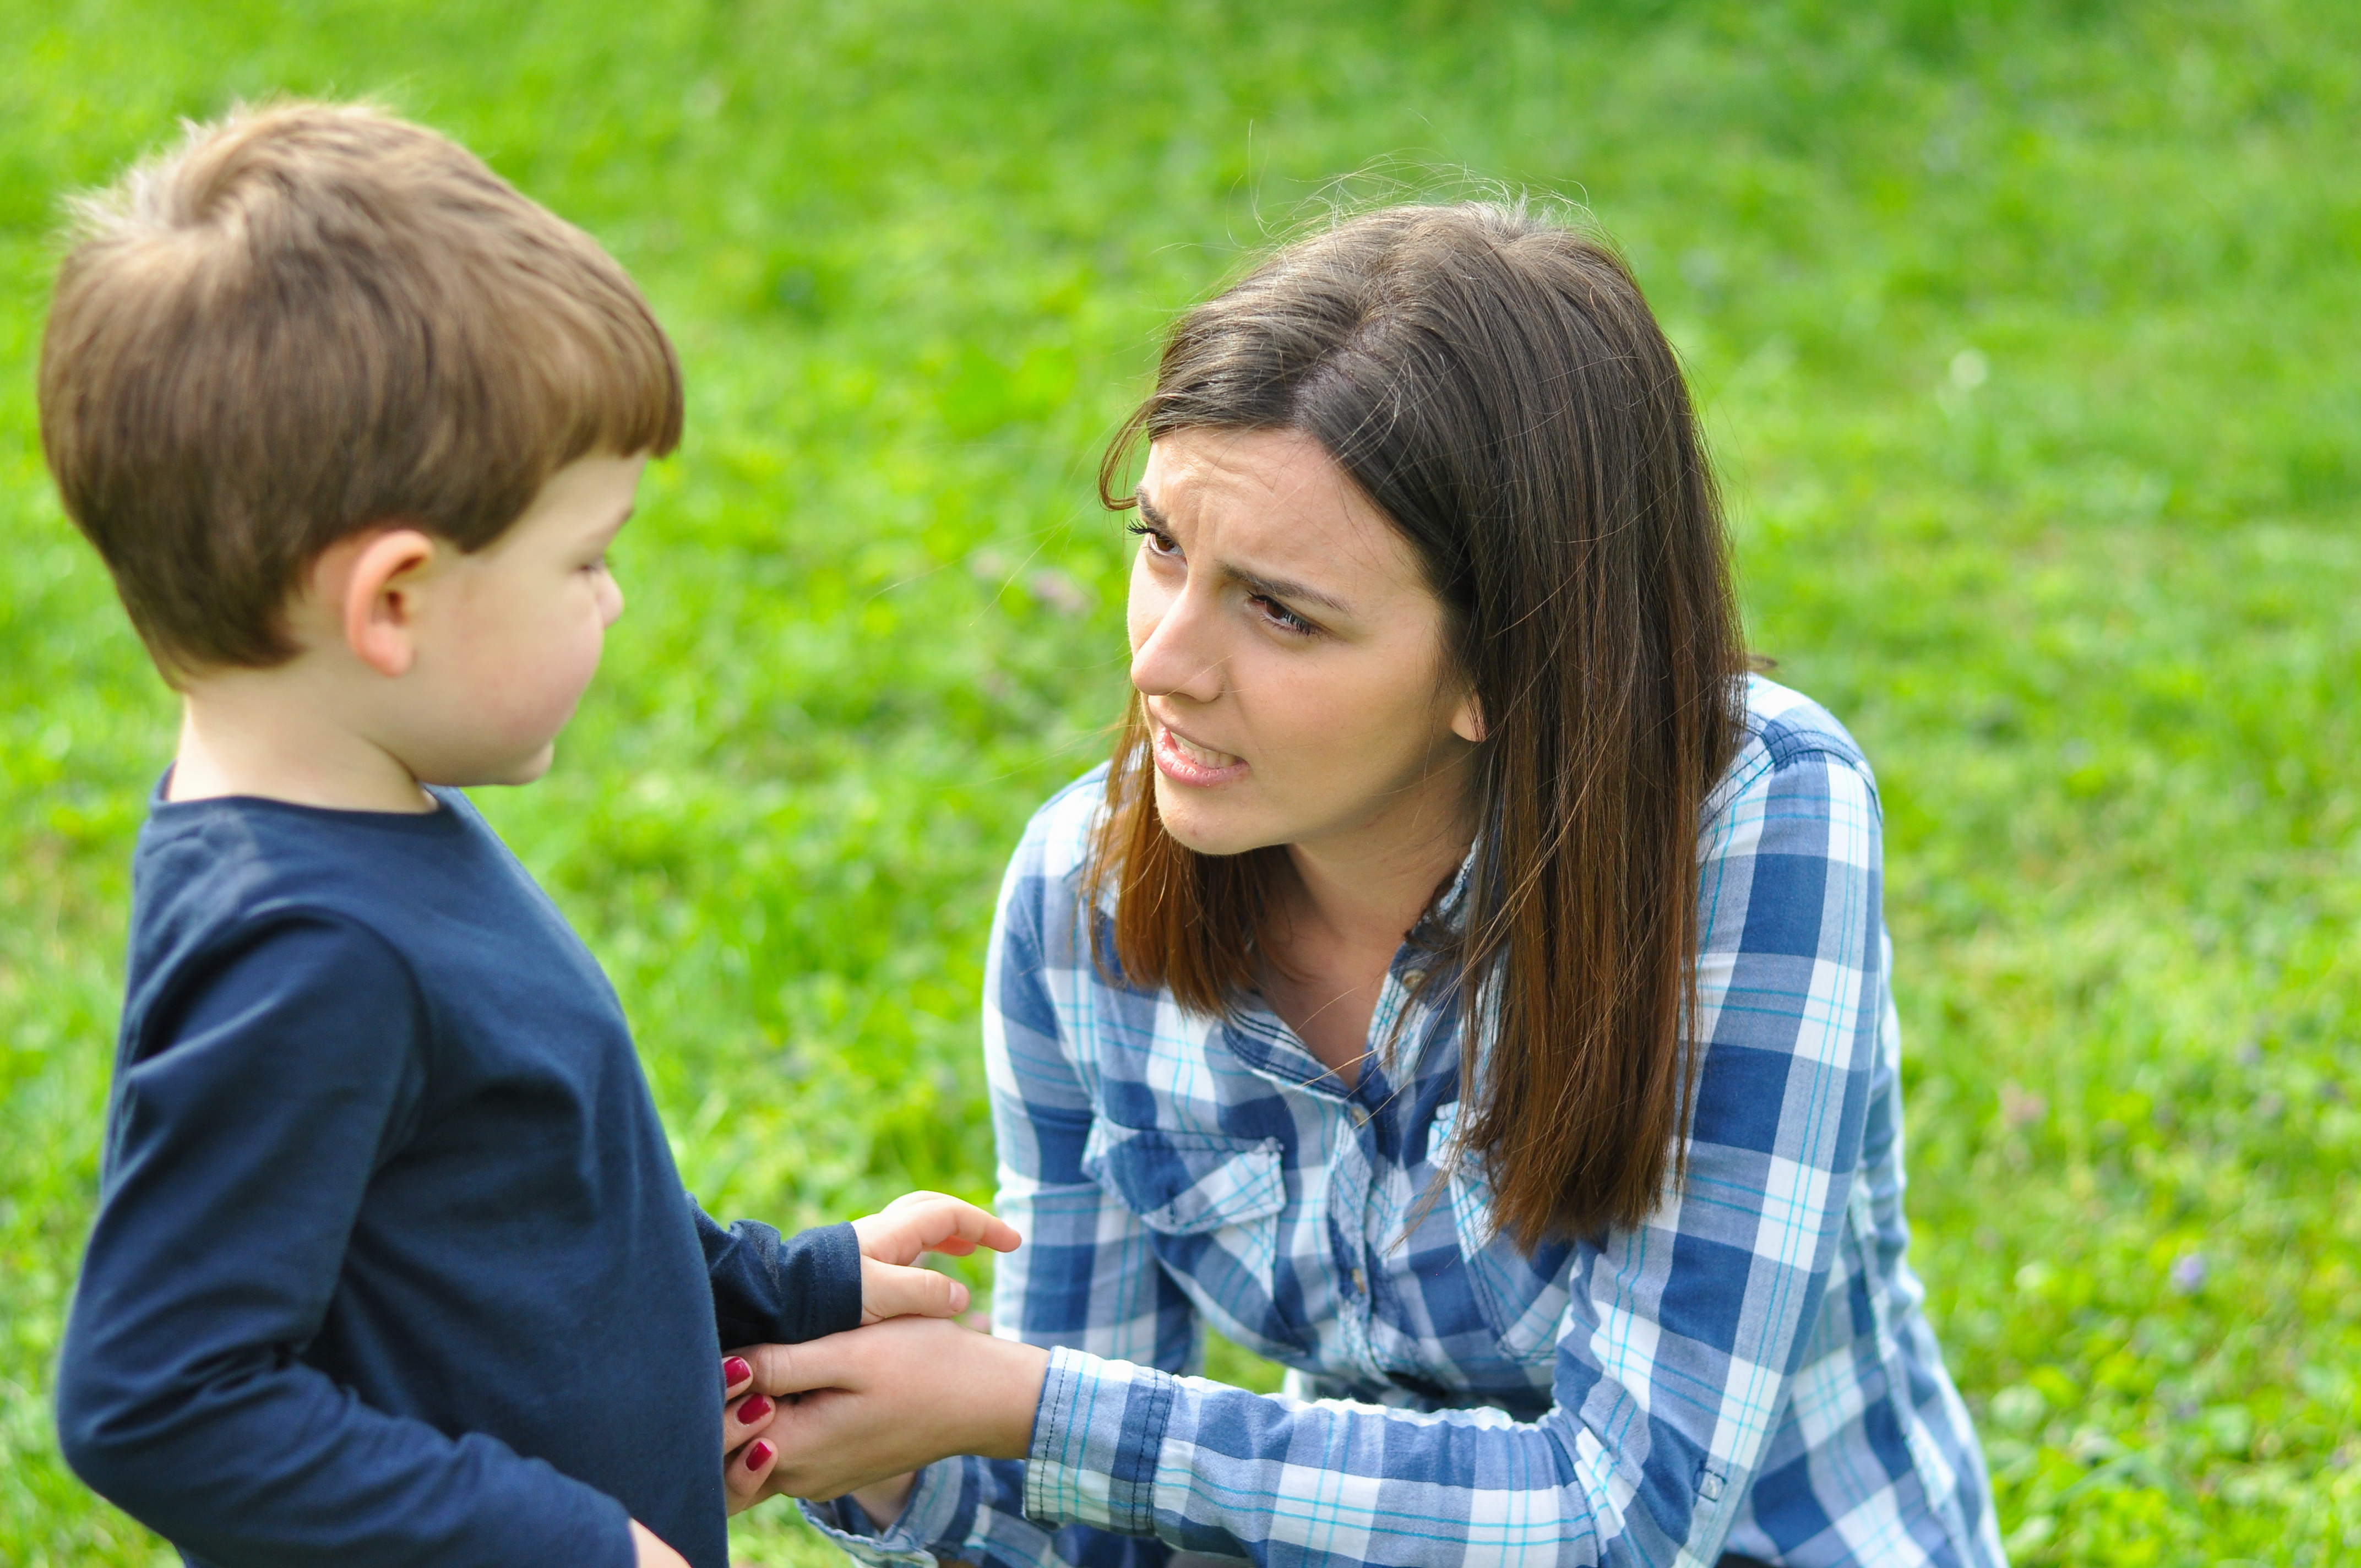 Eine Frau spricht mit einem kleinen Jungen | Quelle: Shutterstock